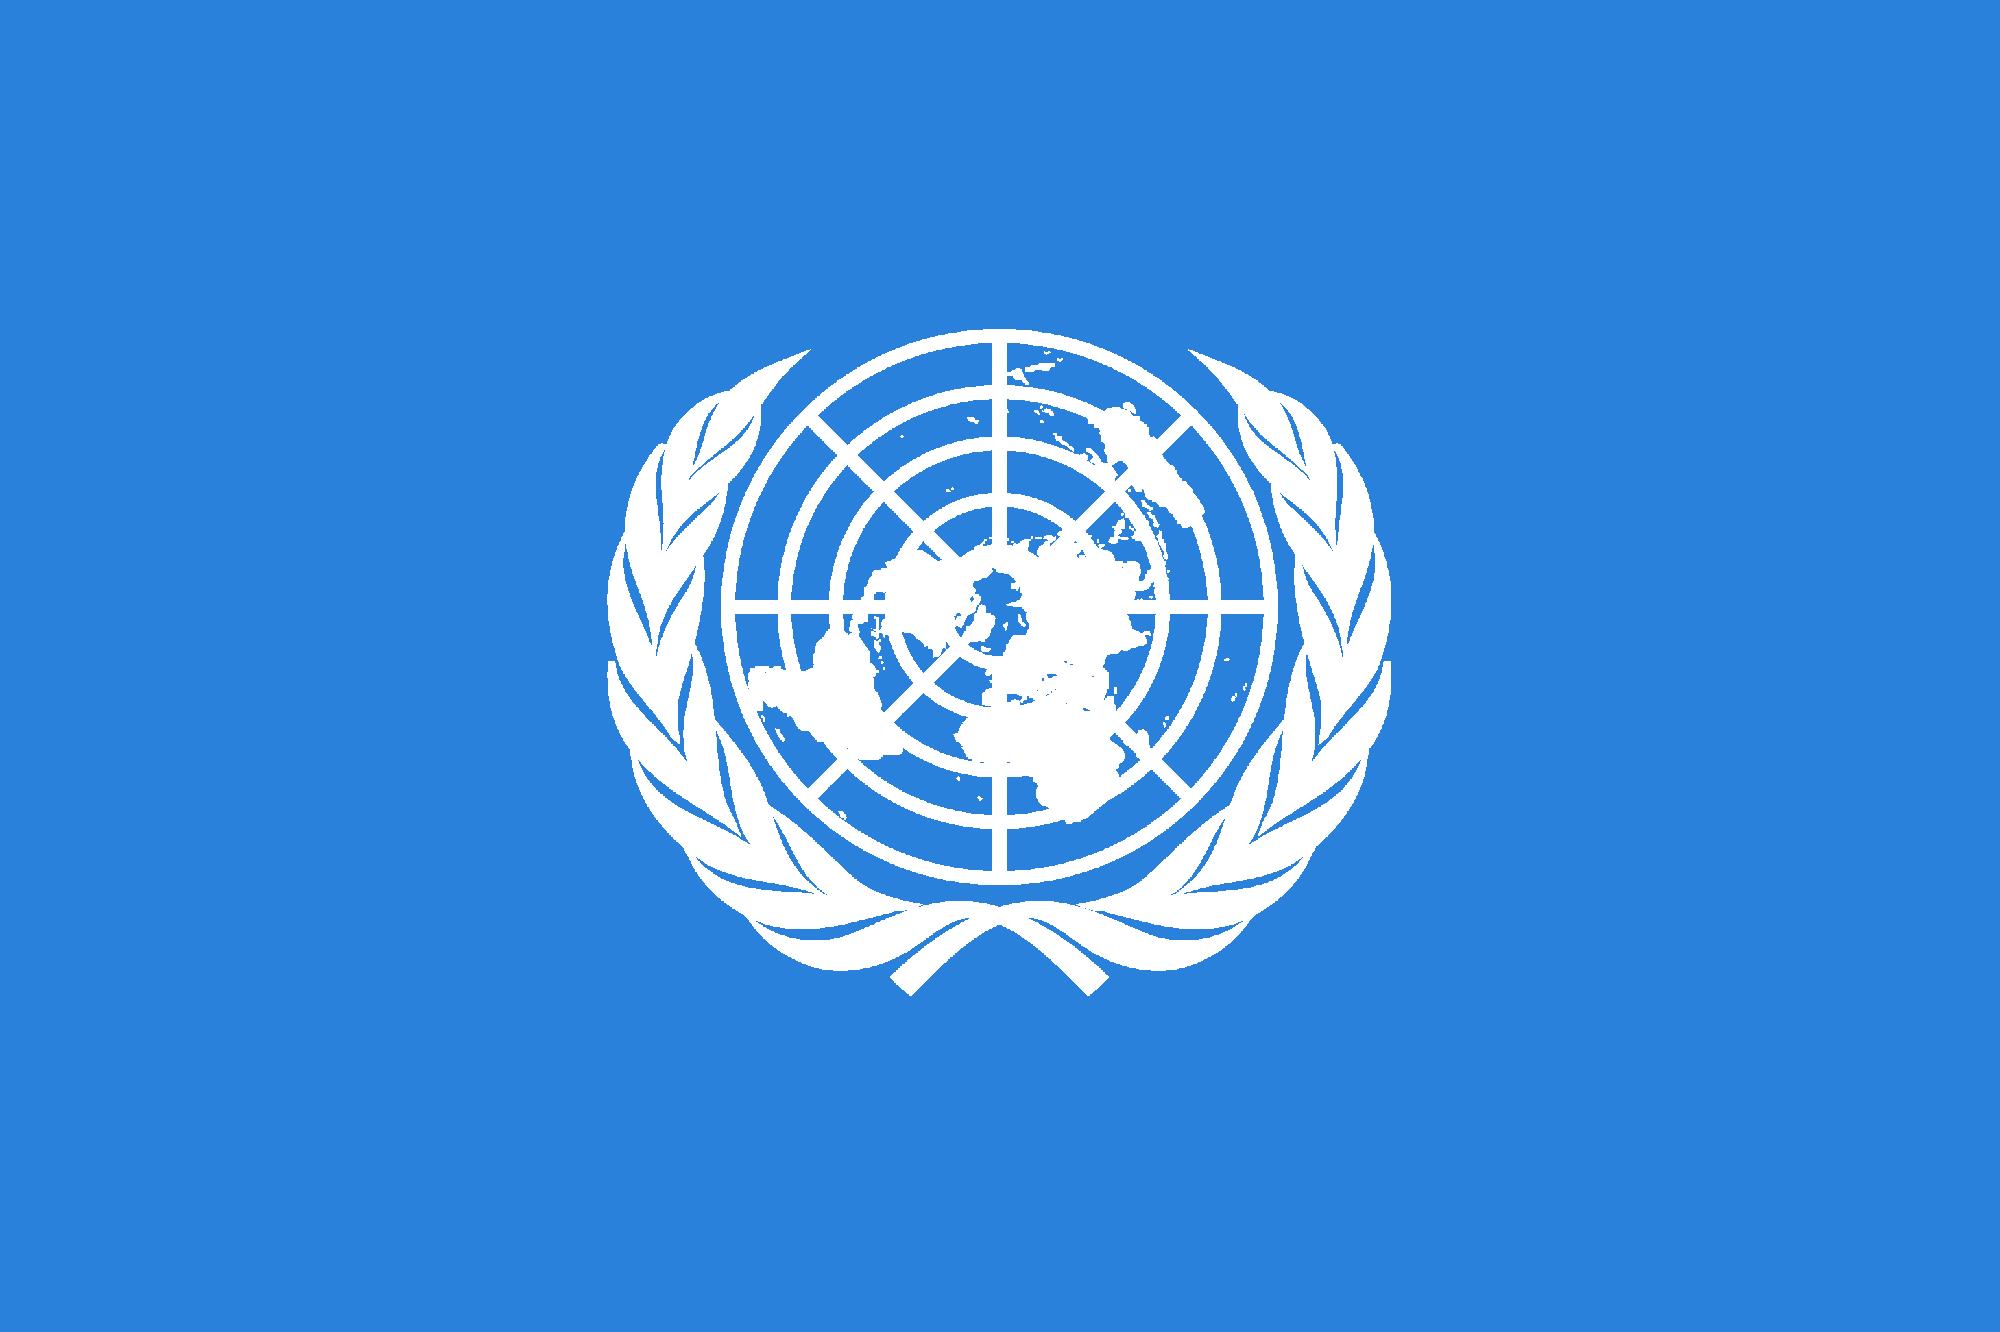 Gyűlölet-bűncselekmények elleni intézkedéseket kér az ENSZ a kormányoktól és cégektől